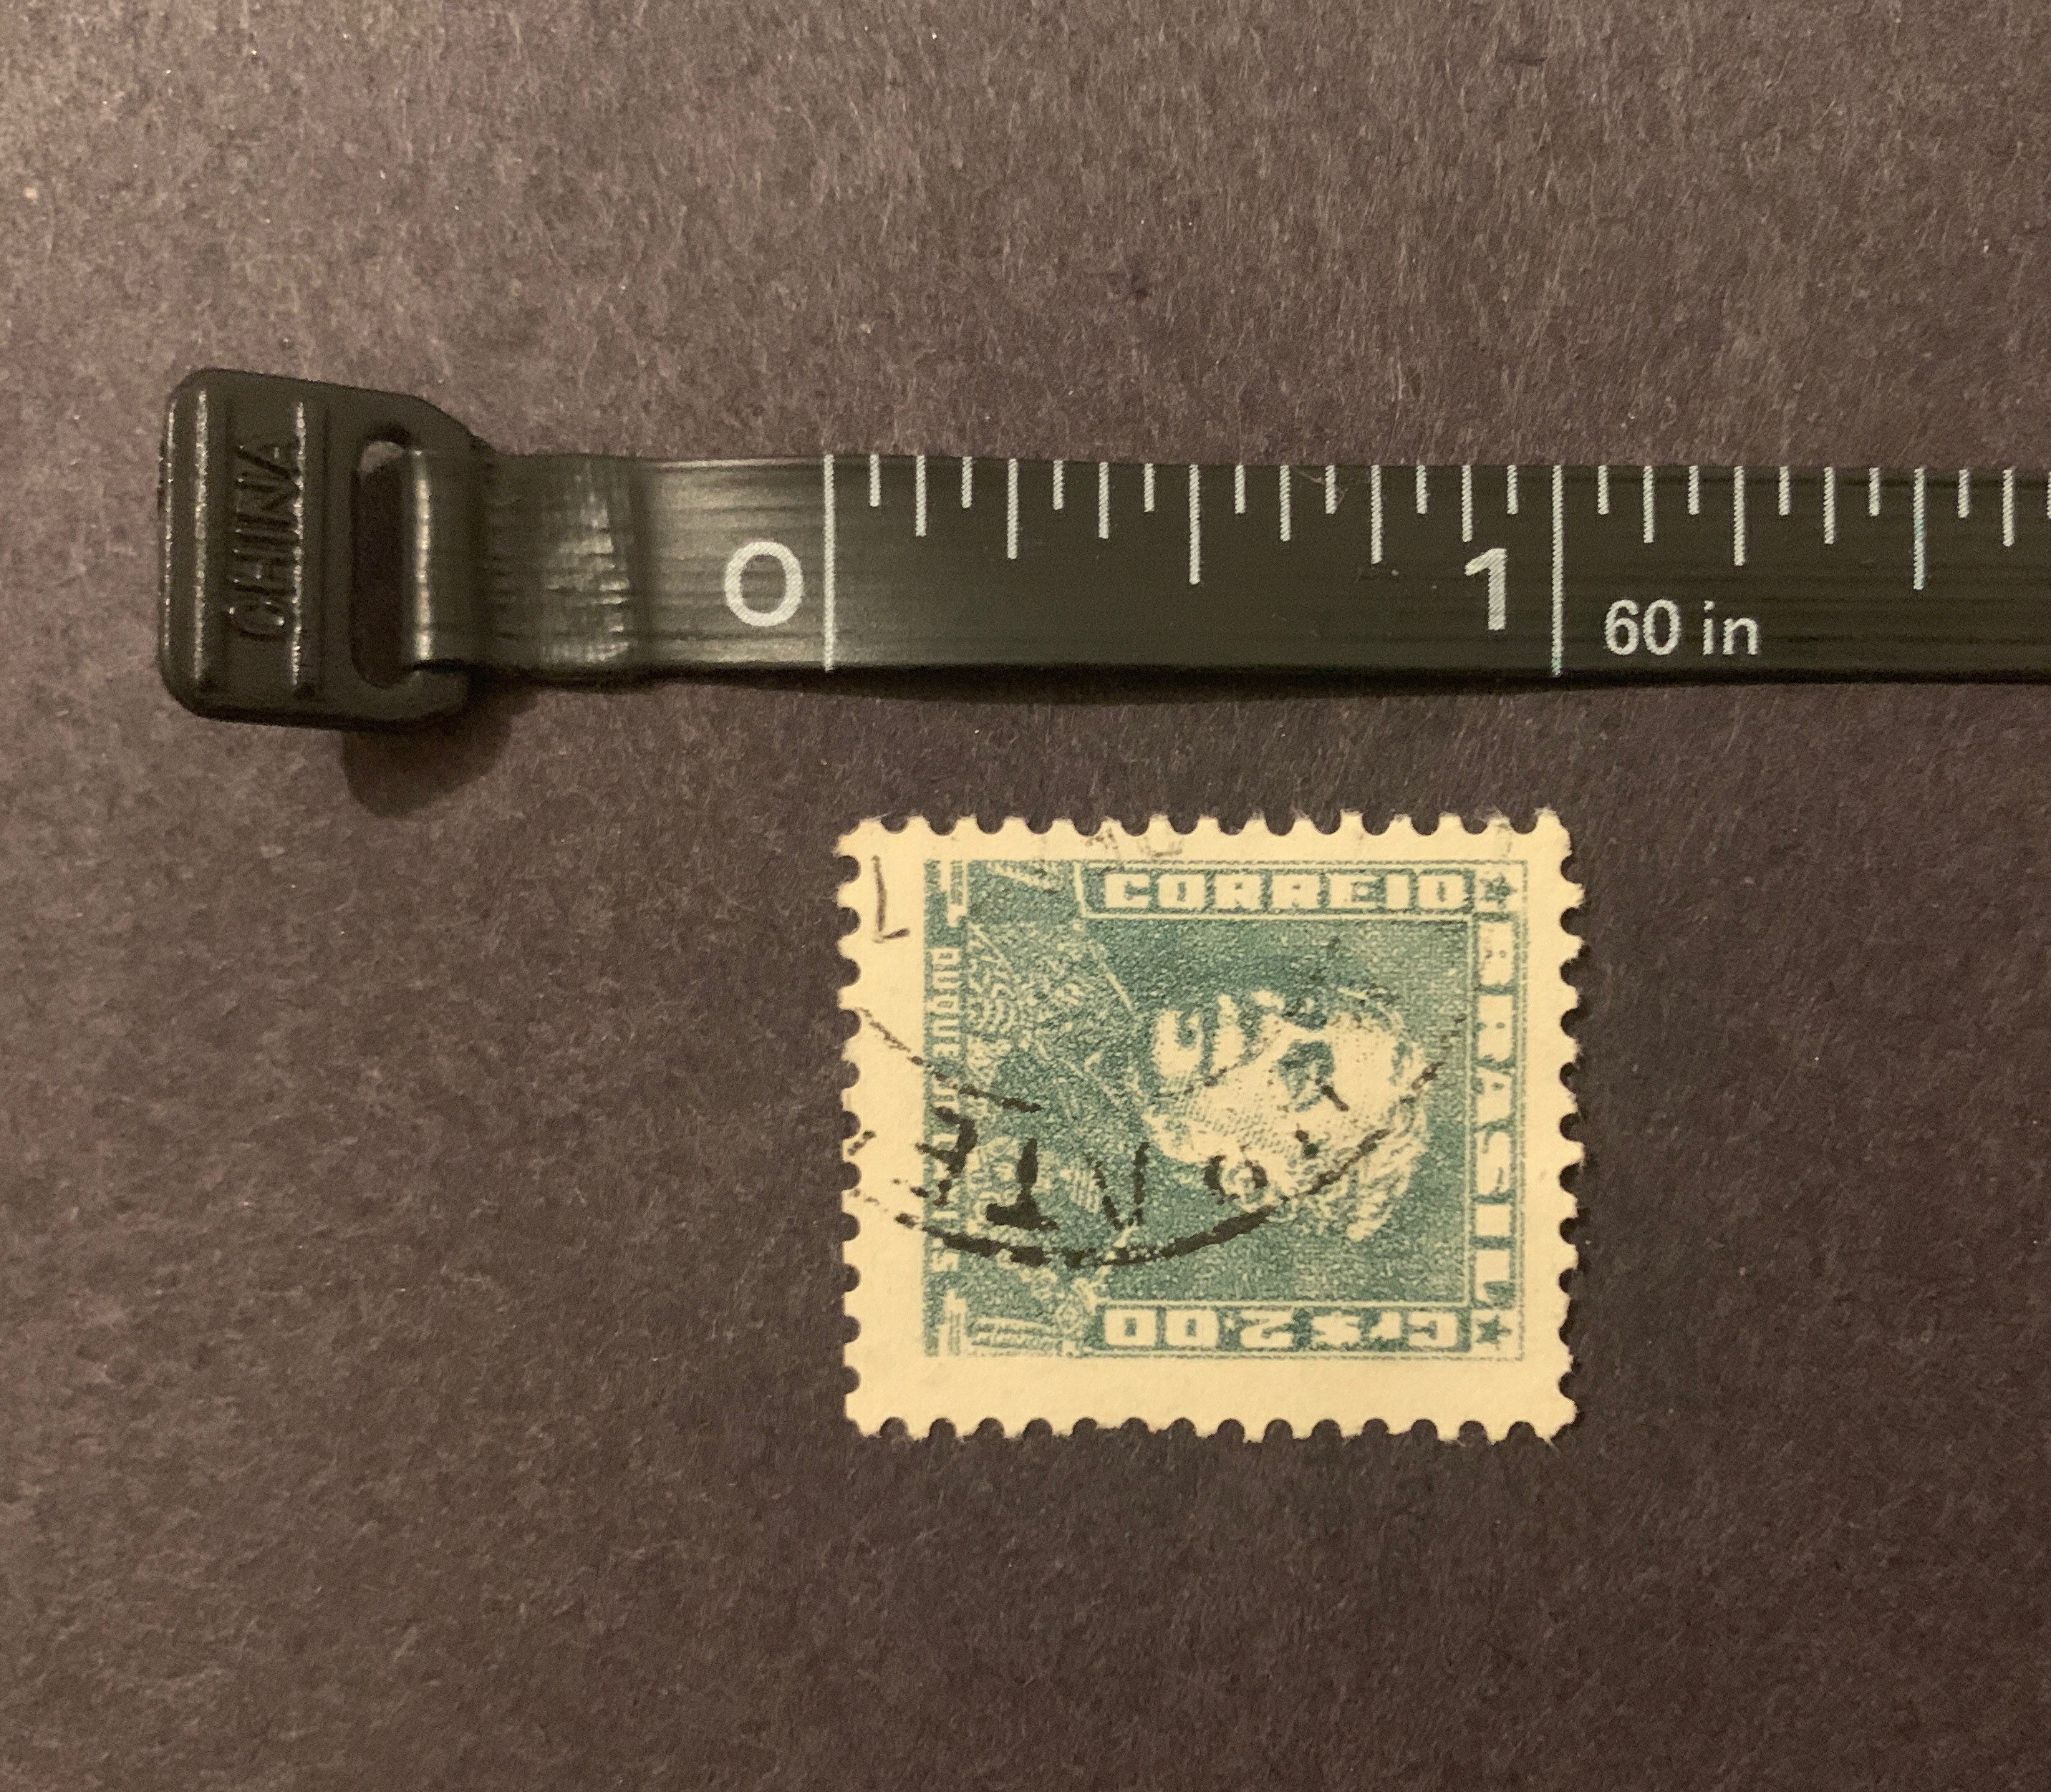 Brazil Stamps - 1950's - Duque de Caxias Cr 1,00 - MNG